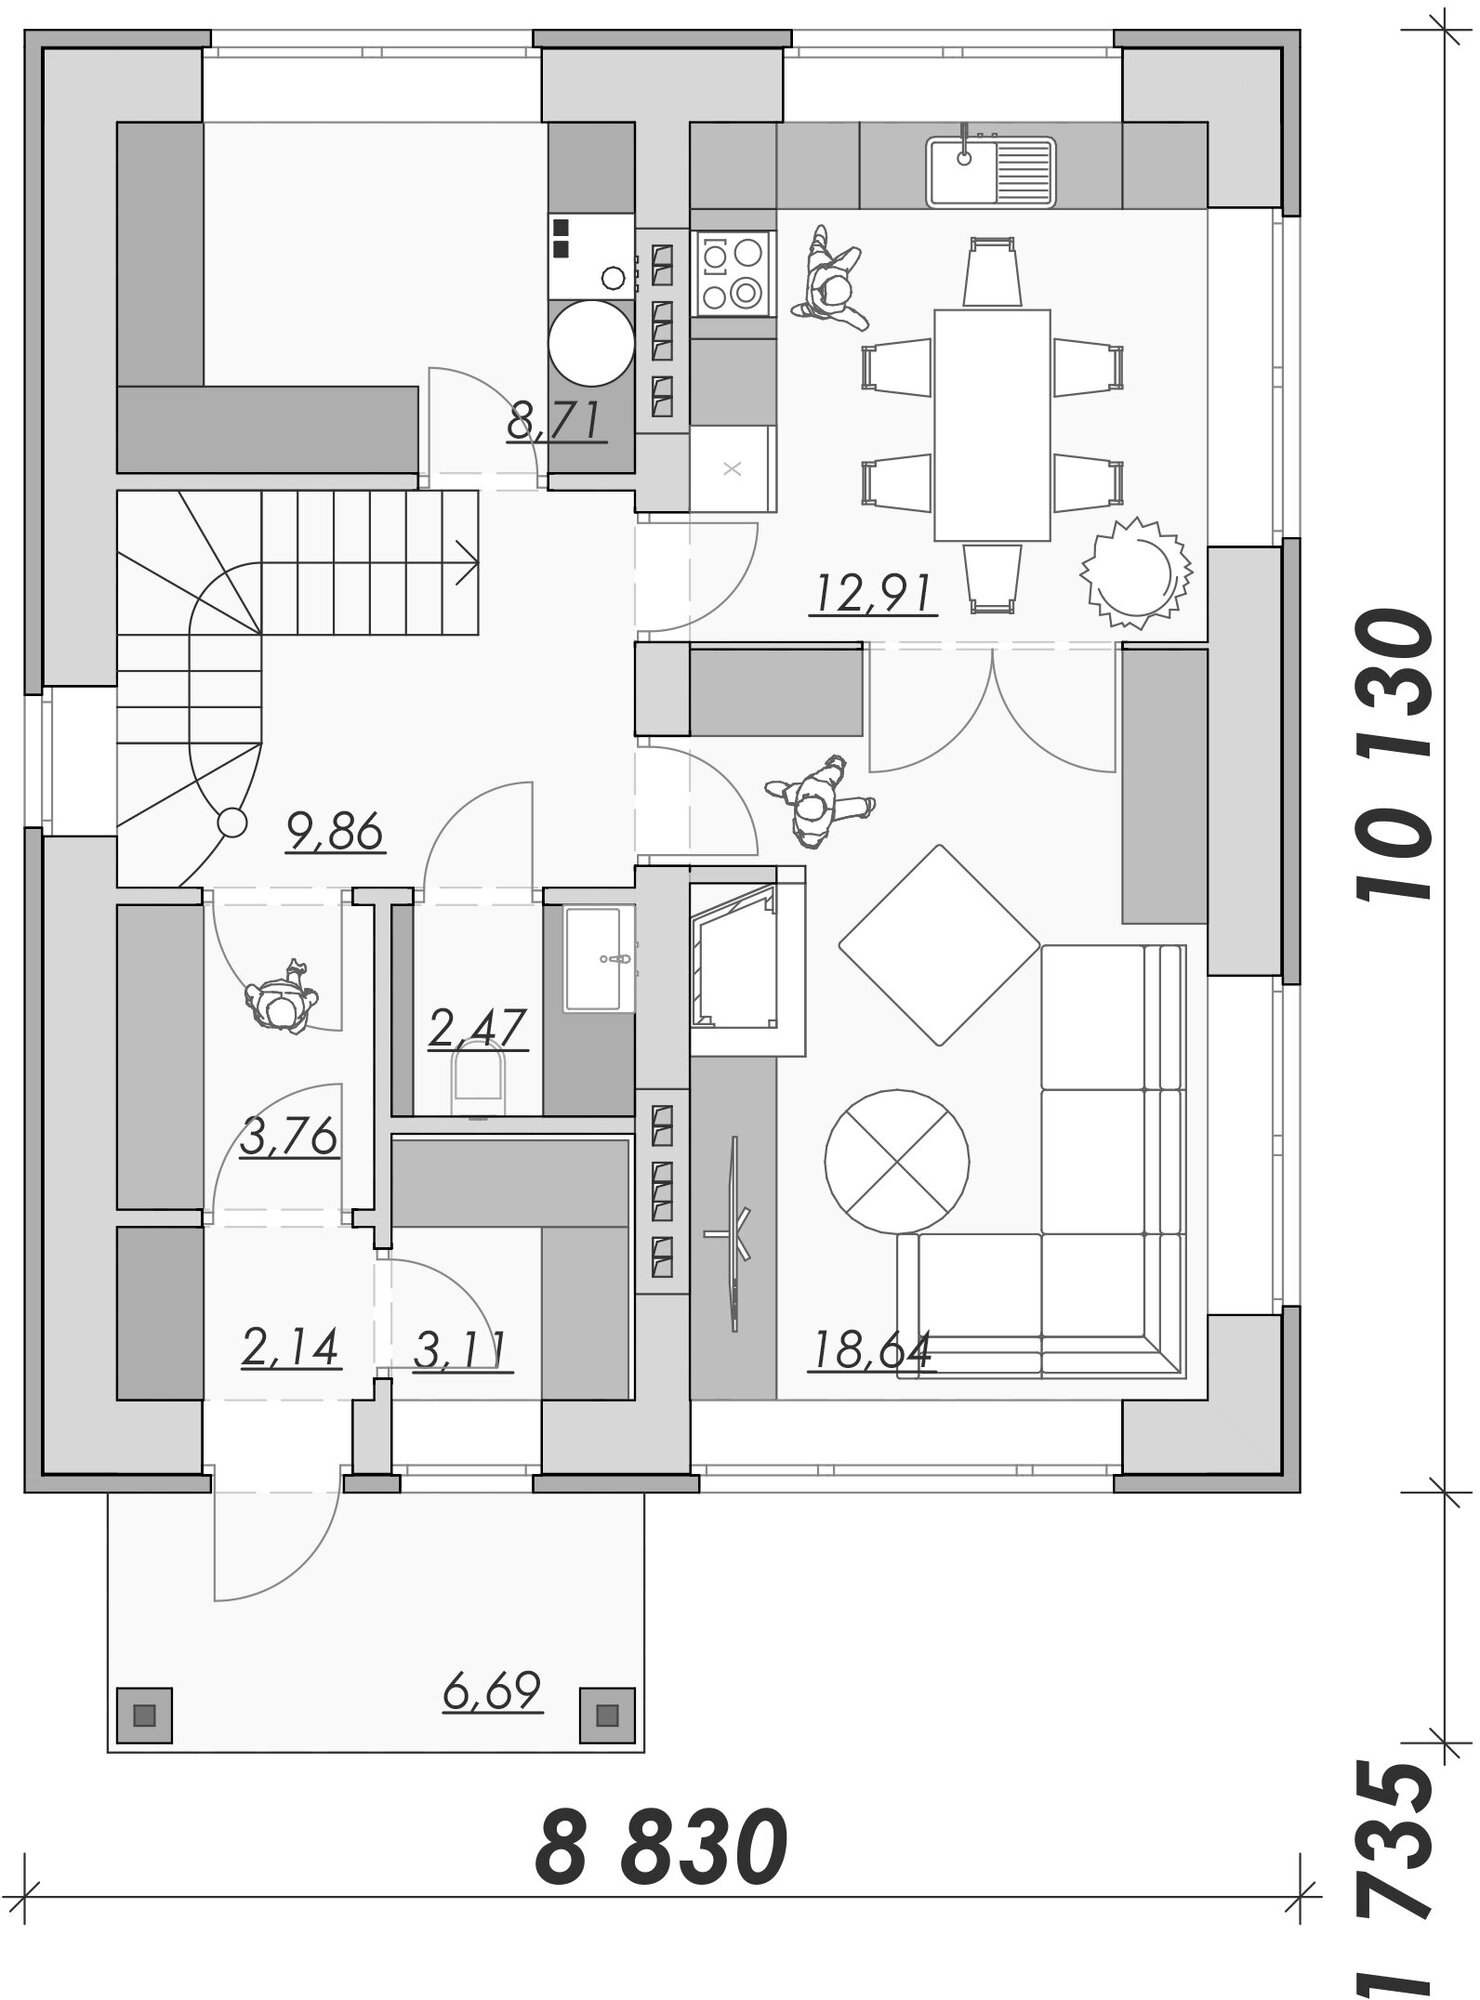 Проект дома в классическом стиле из кирпича, 3 спальнями, раздельными кухней и гостиной, выделенной котельной с прачечной